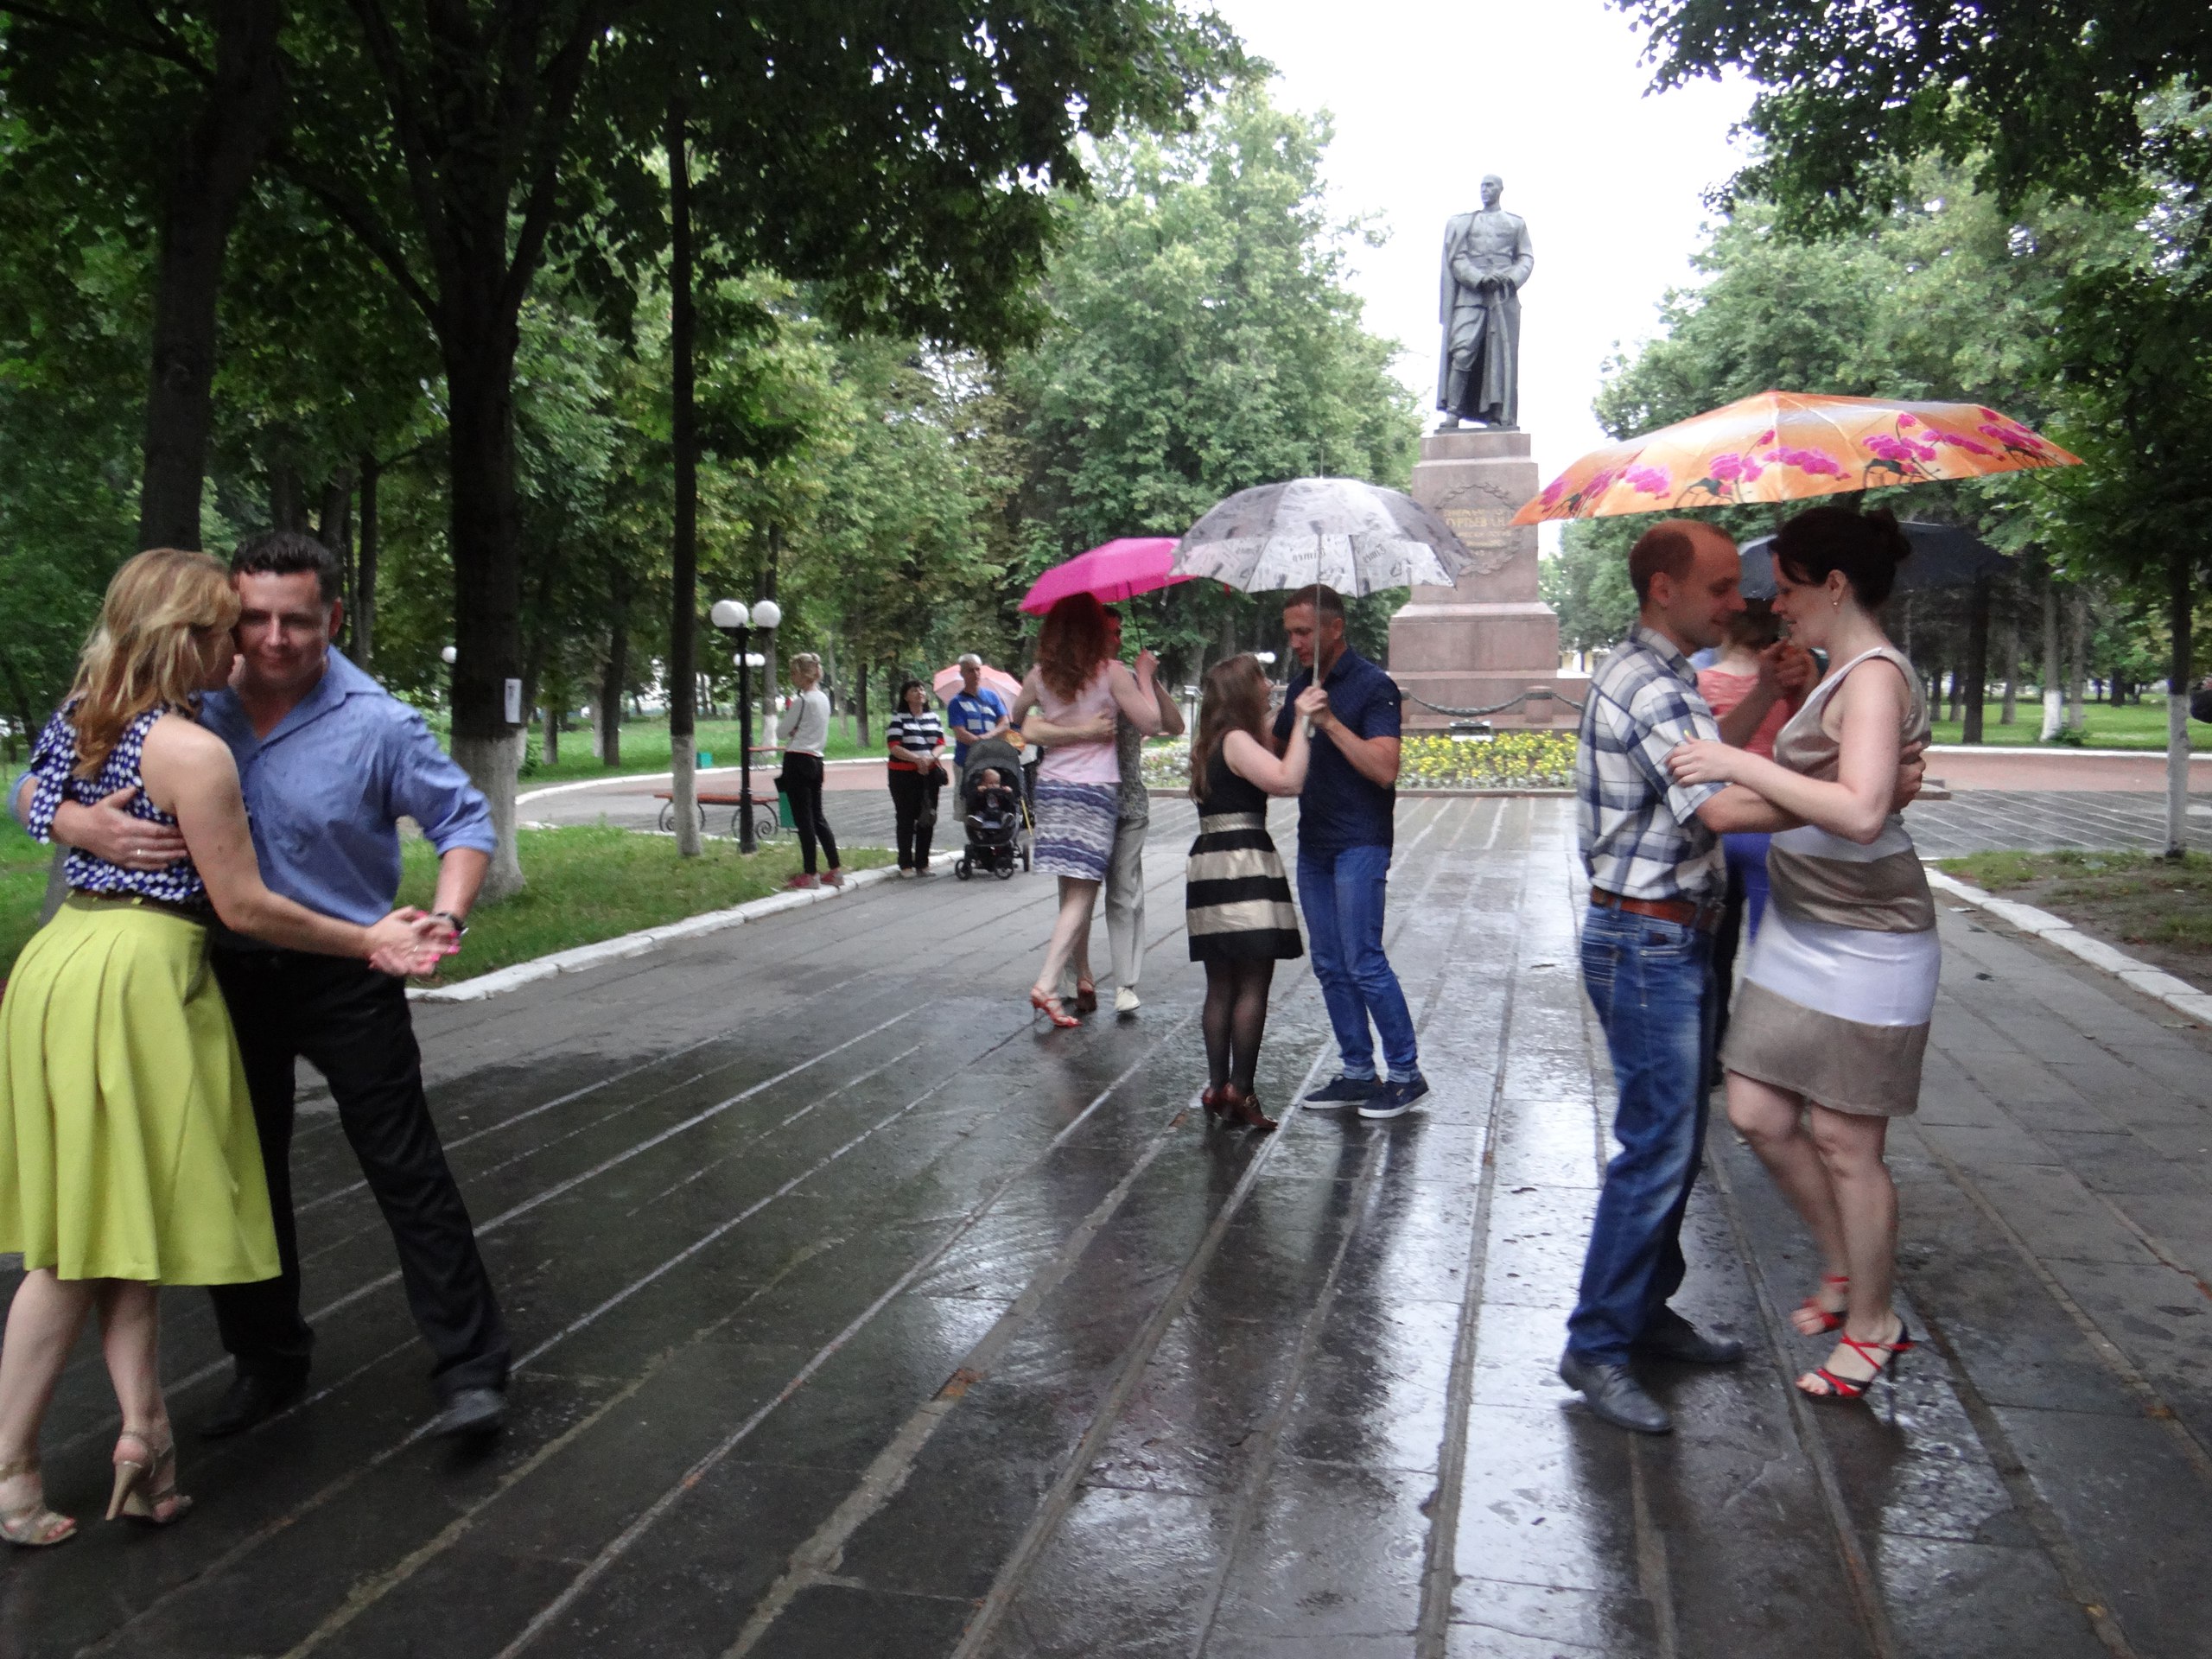 Тоже мечтали танцевать под дождем? Давайте делать это вместе! :-) 
Традиционный летний open-air "В тени каштанов"... 